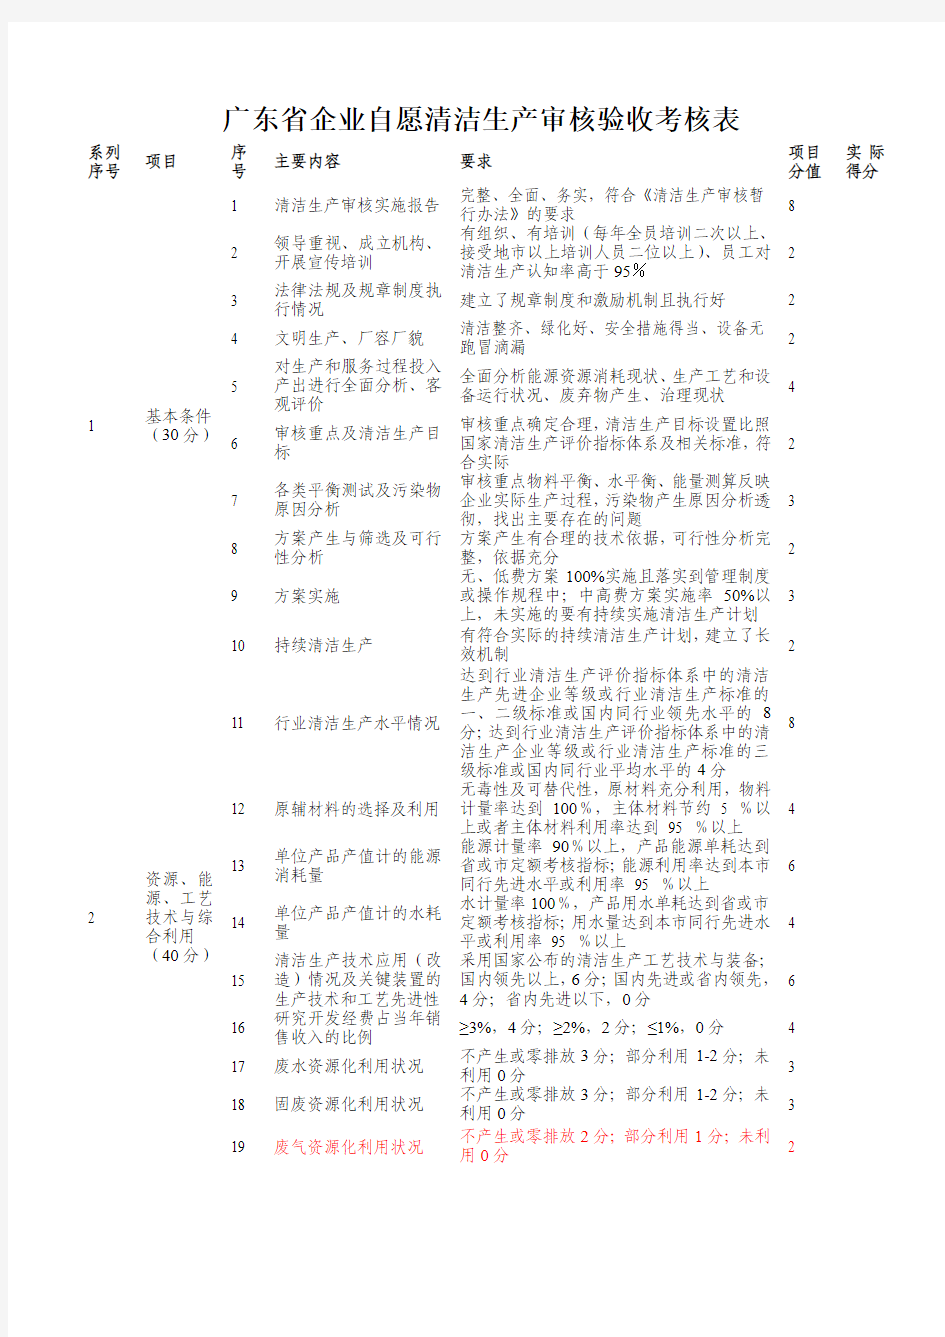 广东省企业自愿清洁生产审核验收考核表